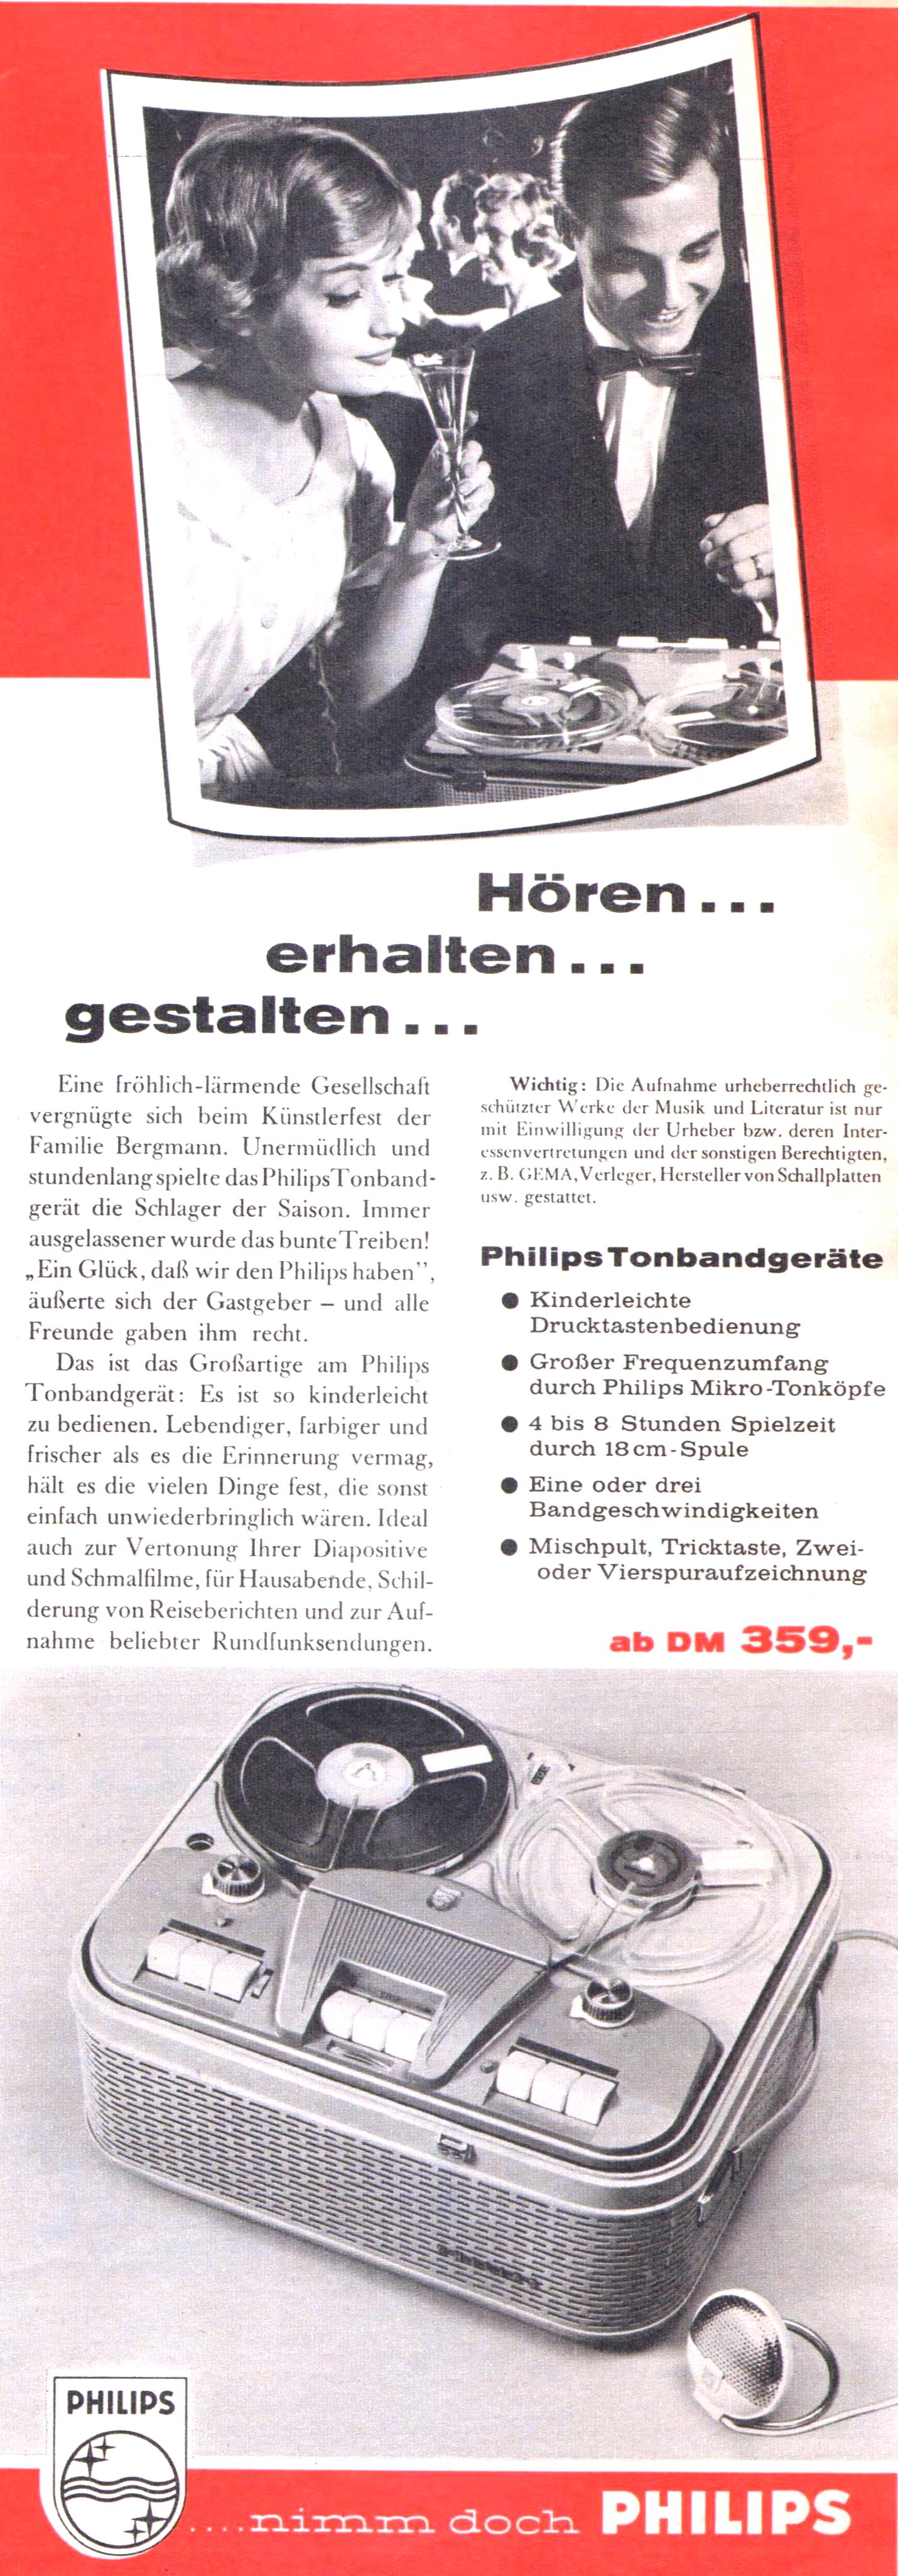 Philips 1959 263.jpg